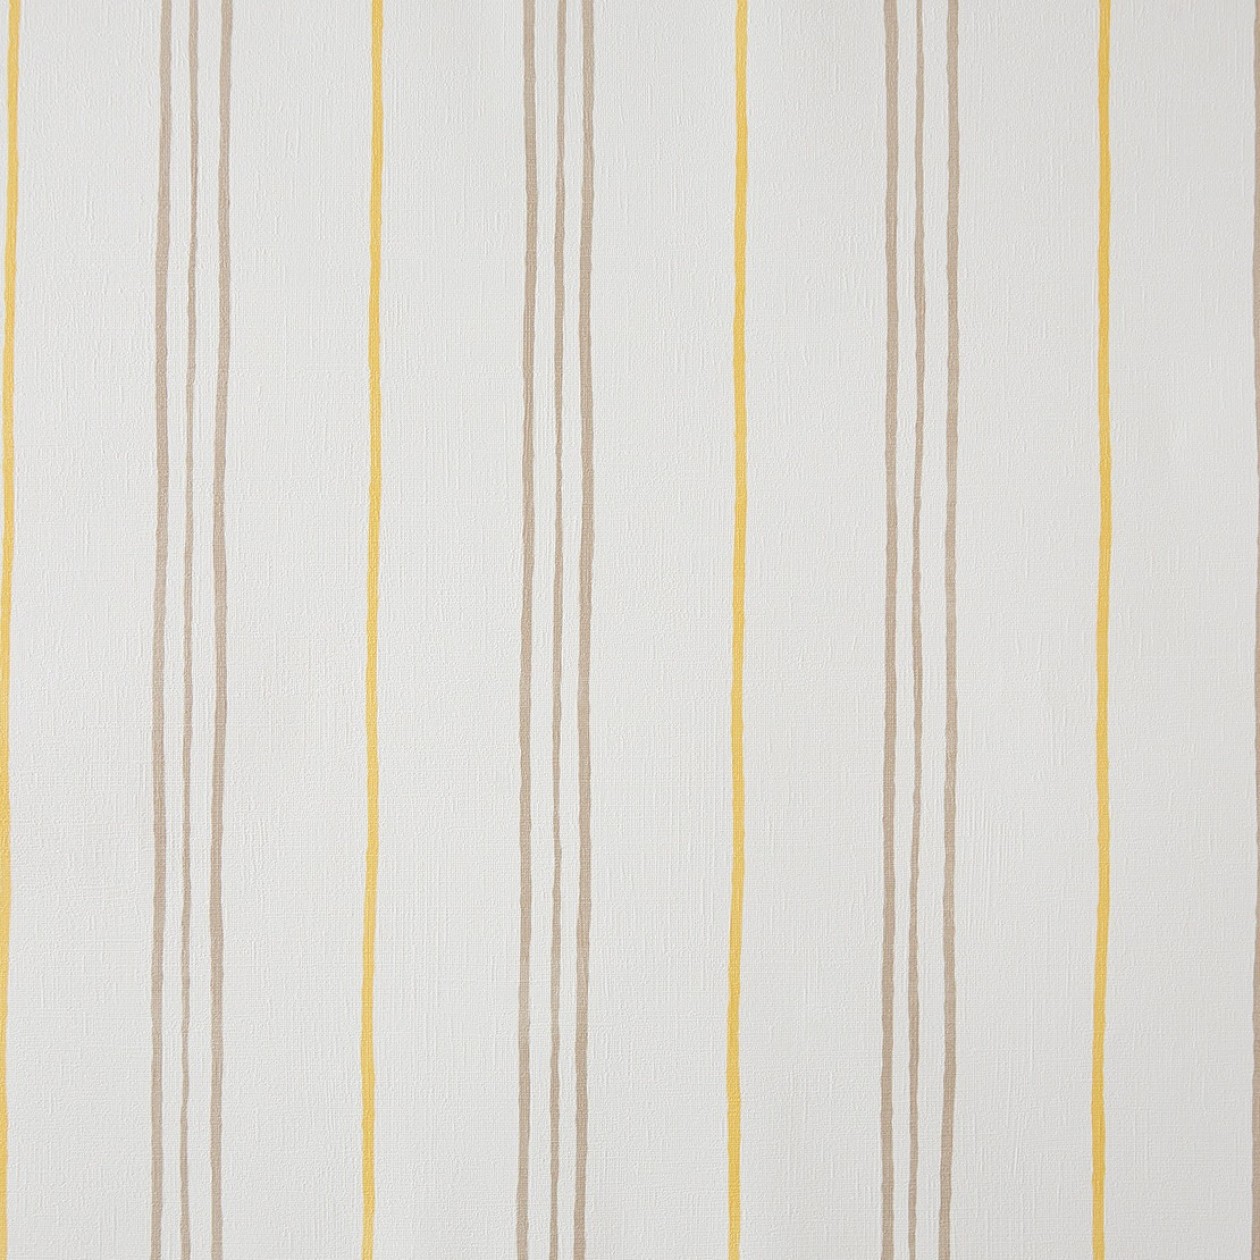 Ongekend Cavaillon behang - strepen verticaal geel off-white bruin HR-51